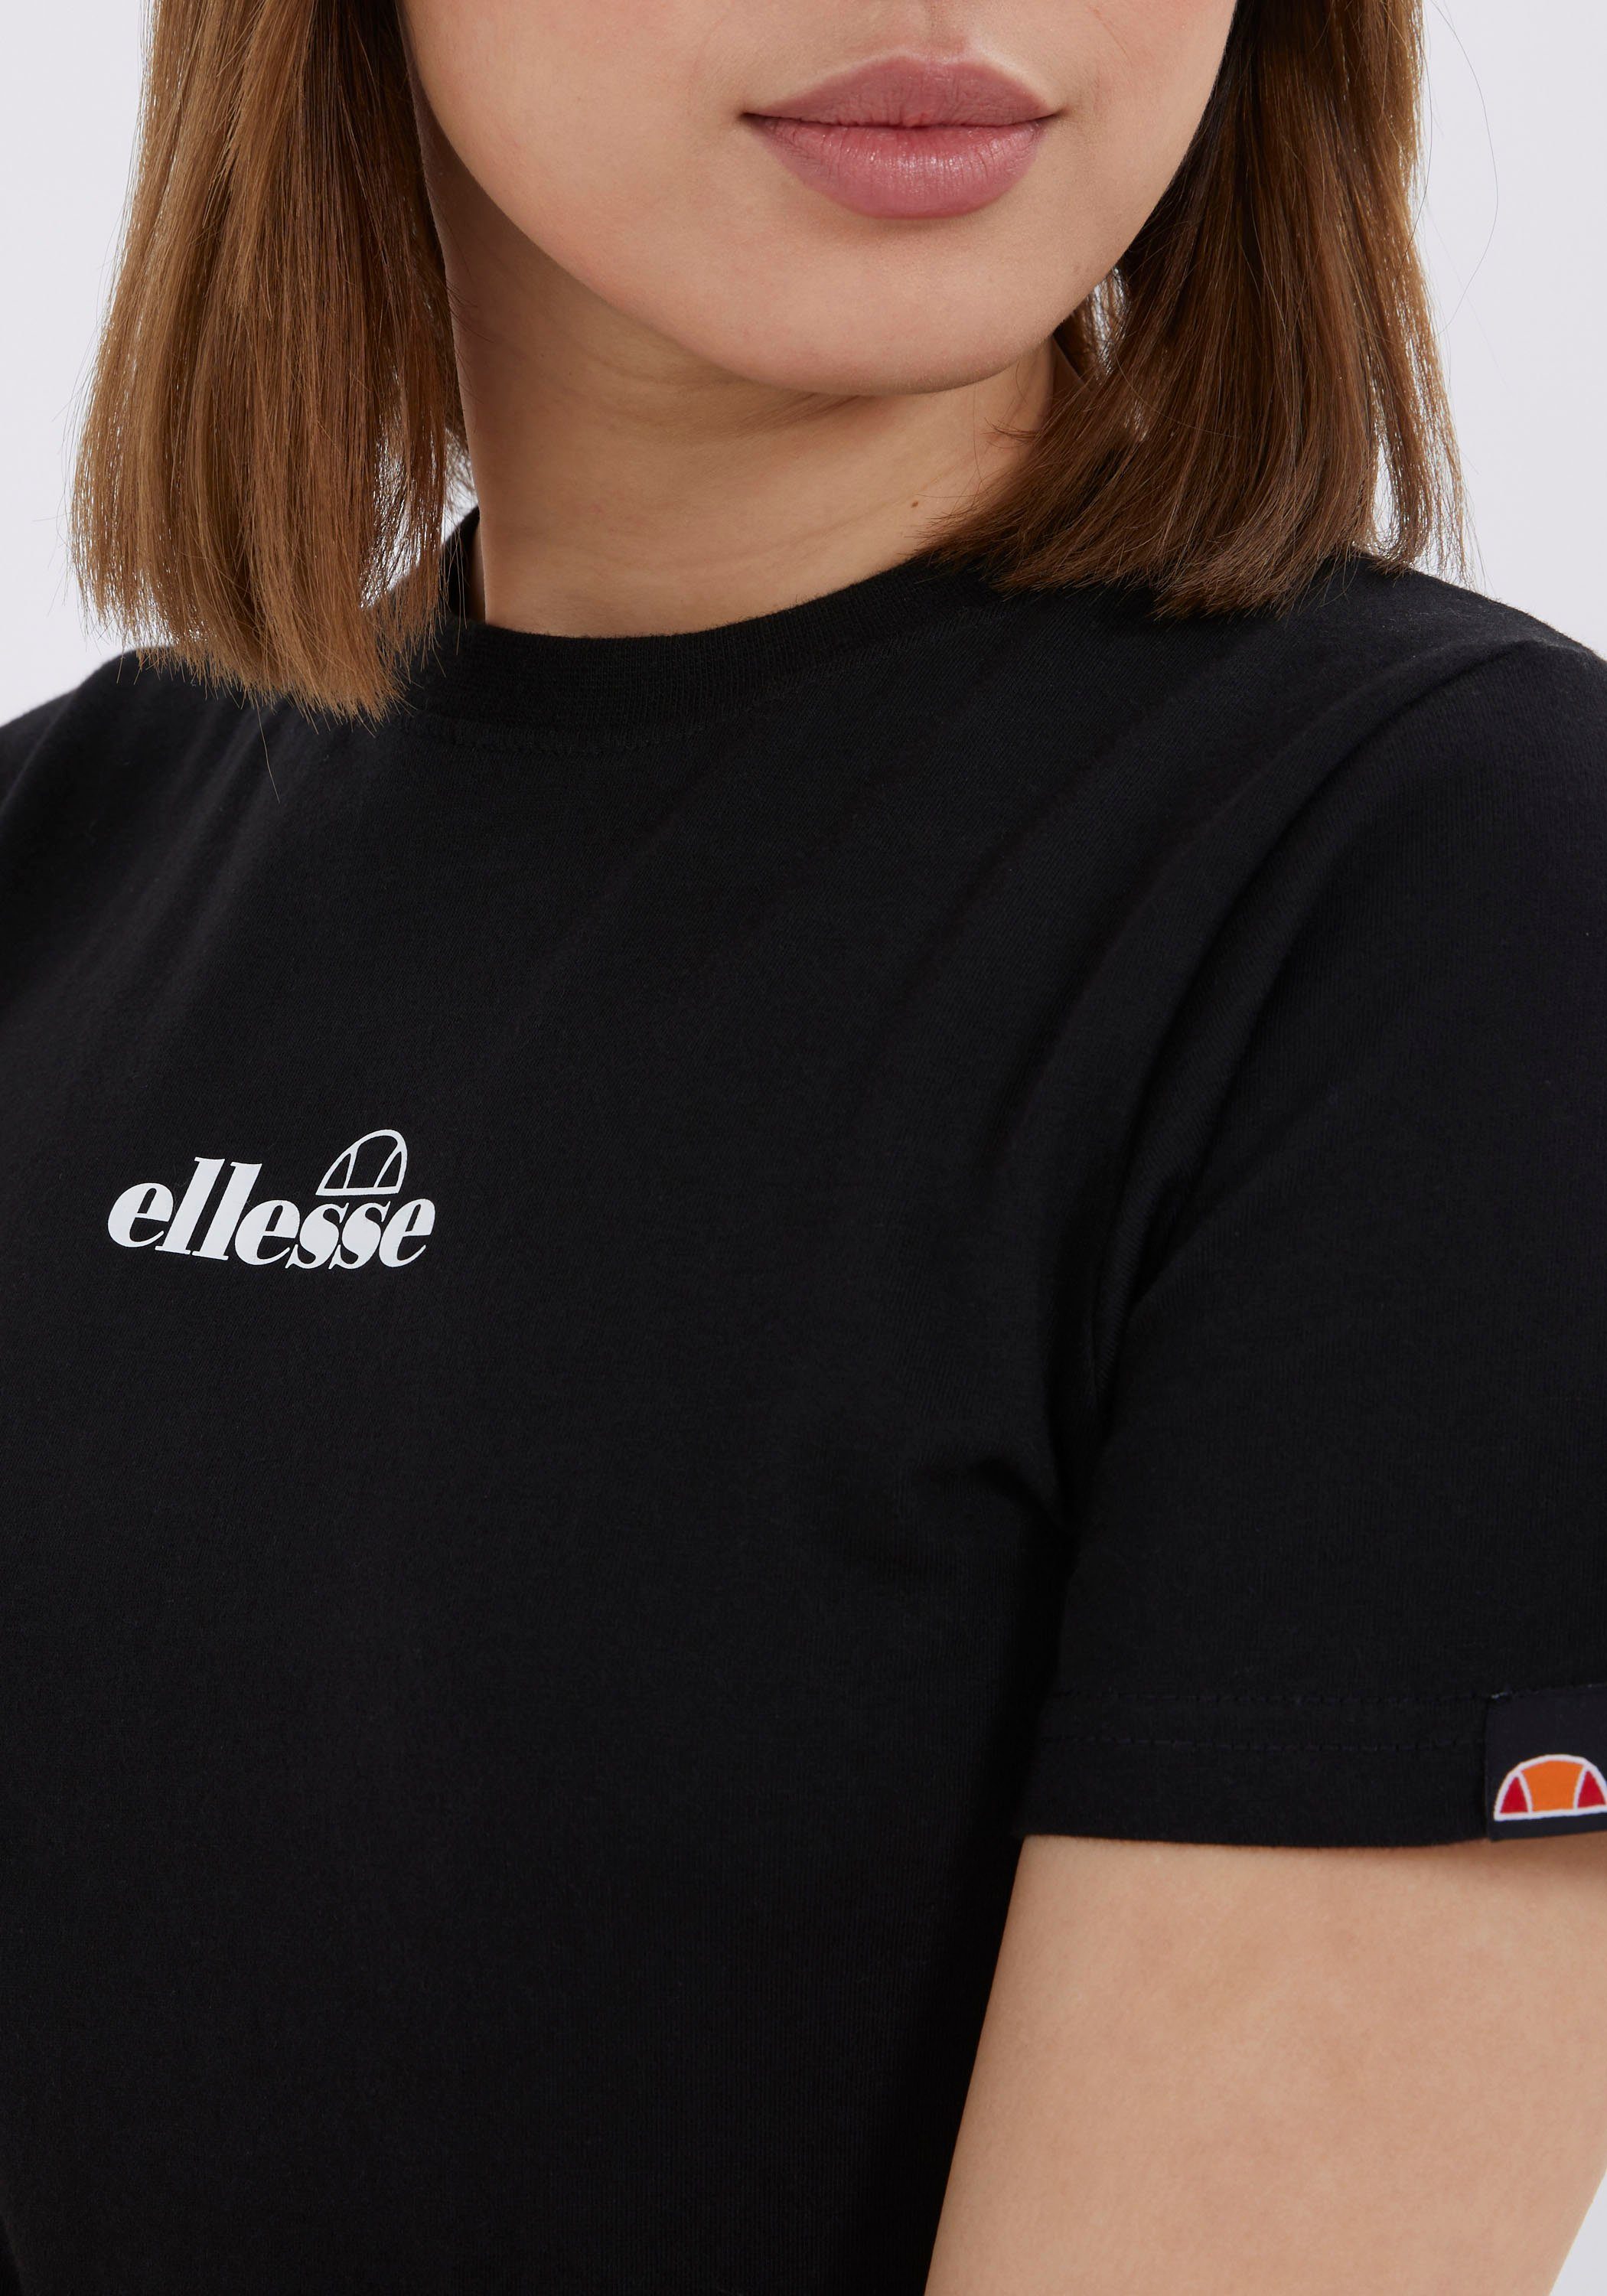 Ellesse T-Shirt BECKANA black T-SHIRT